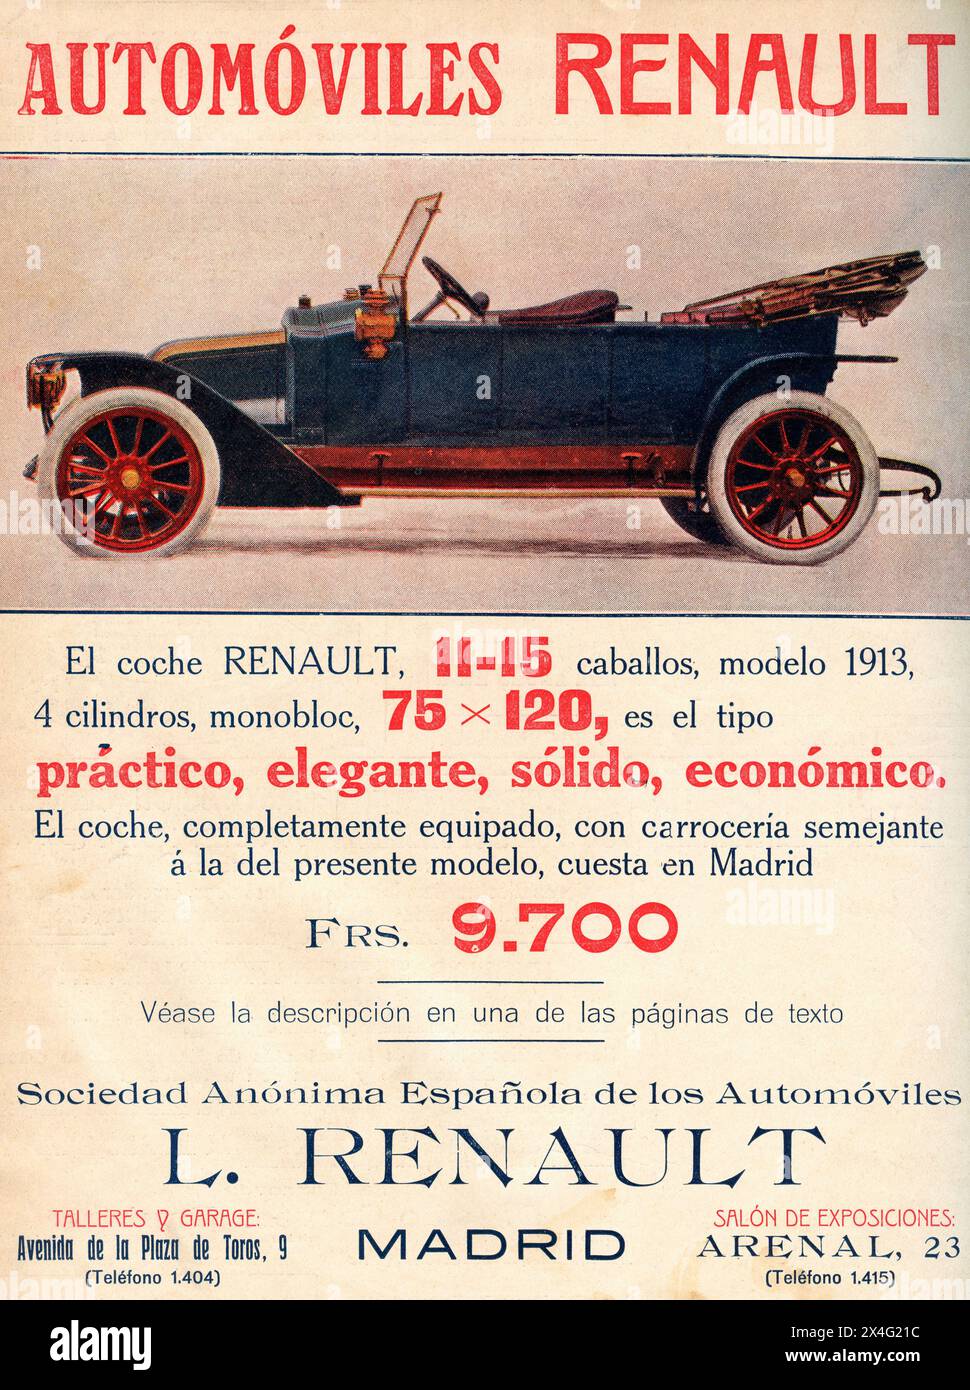 Pubblicità spagnola per un'auto Renault. Da Mundo grafico, pubblicato nel 1912. Foto Stock